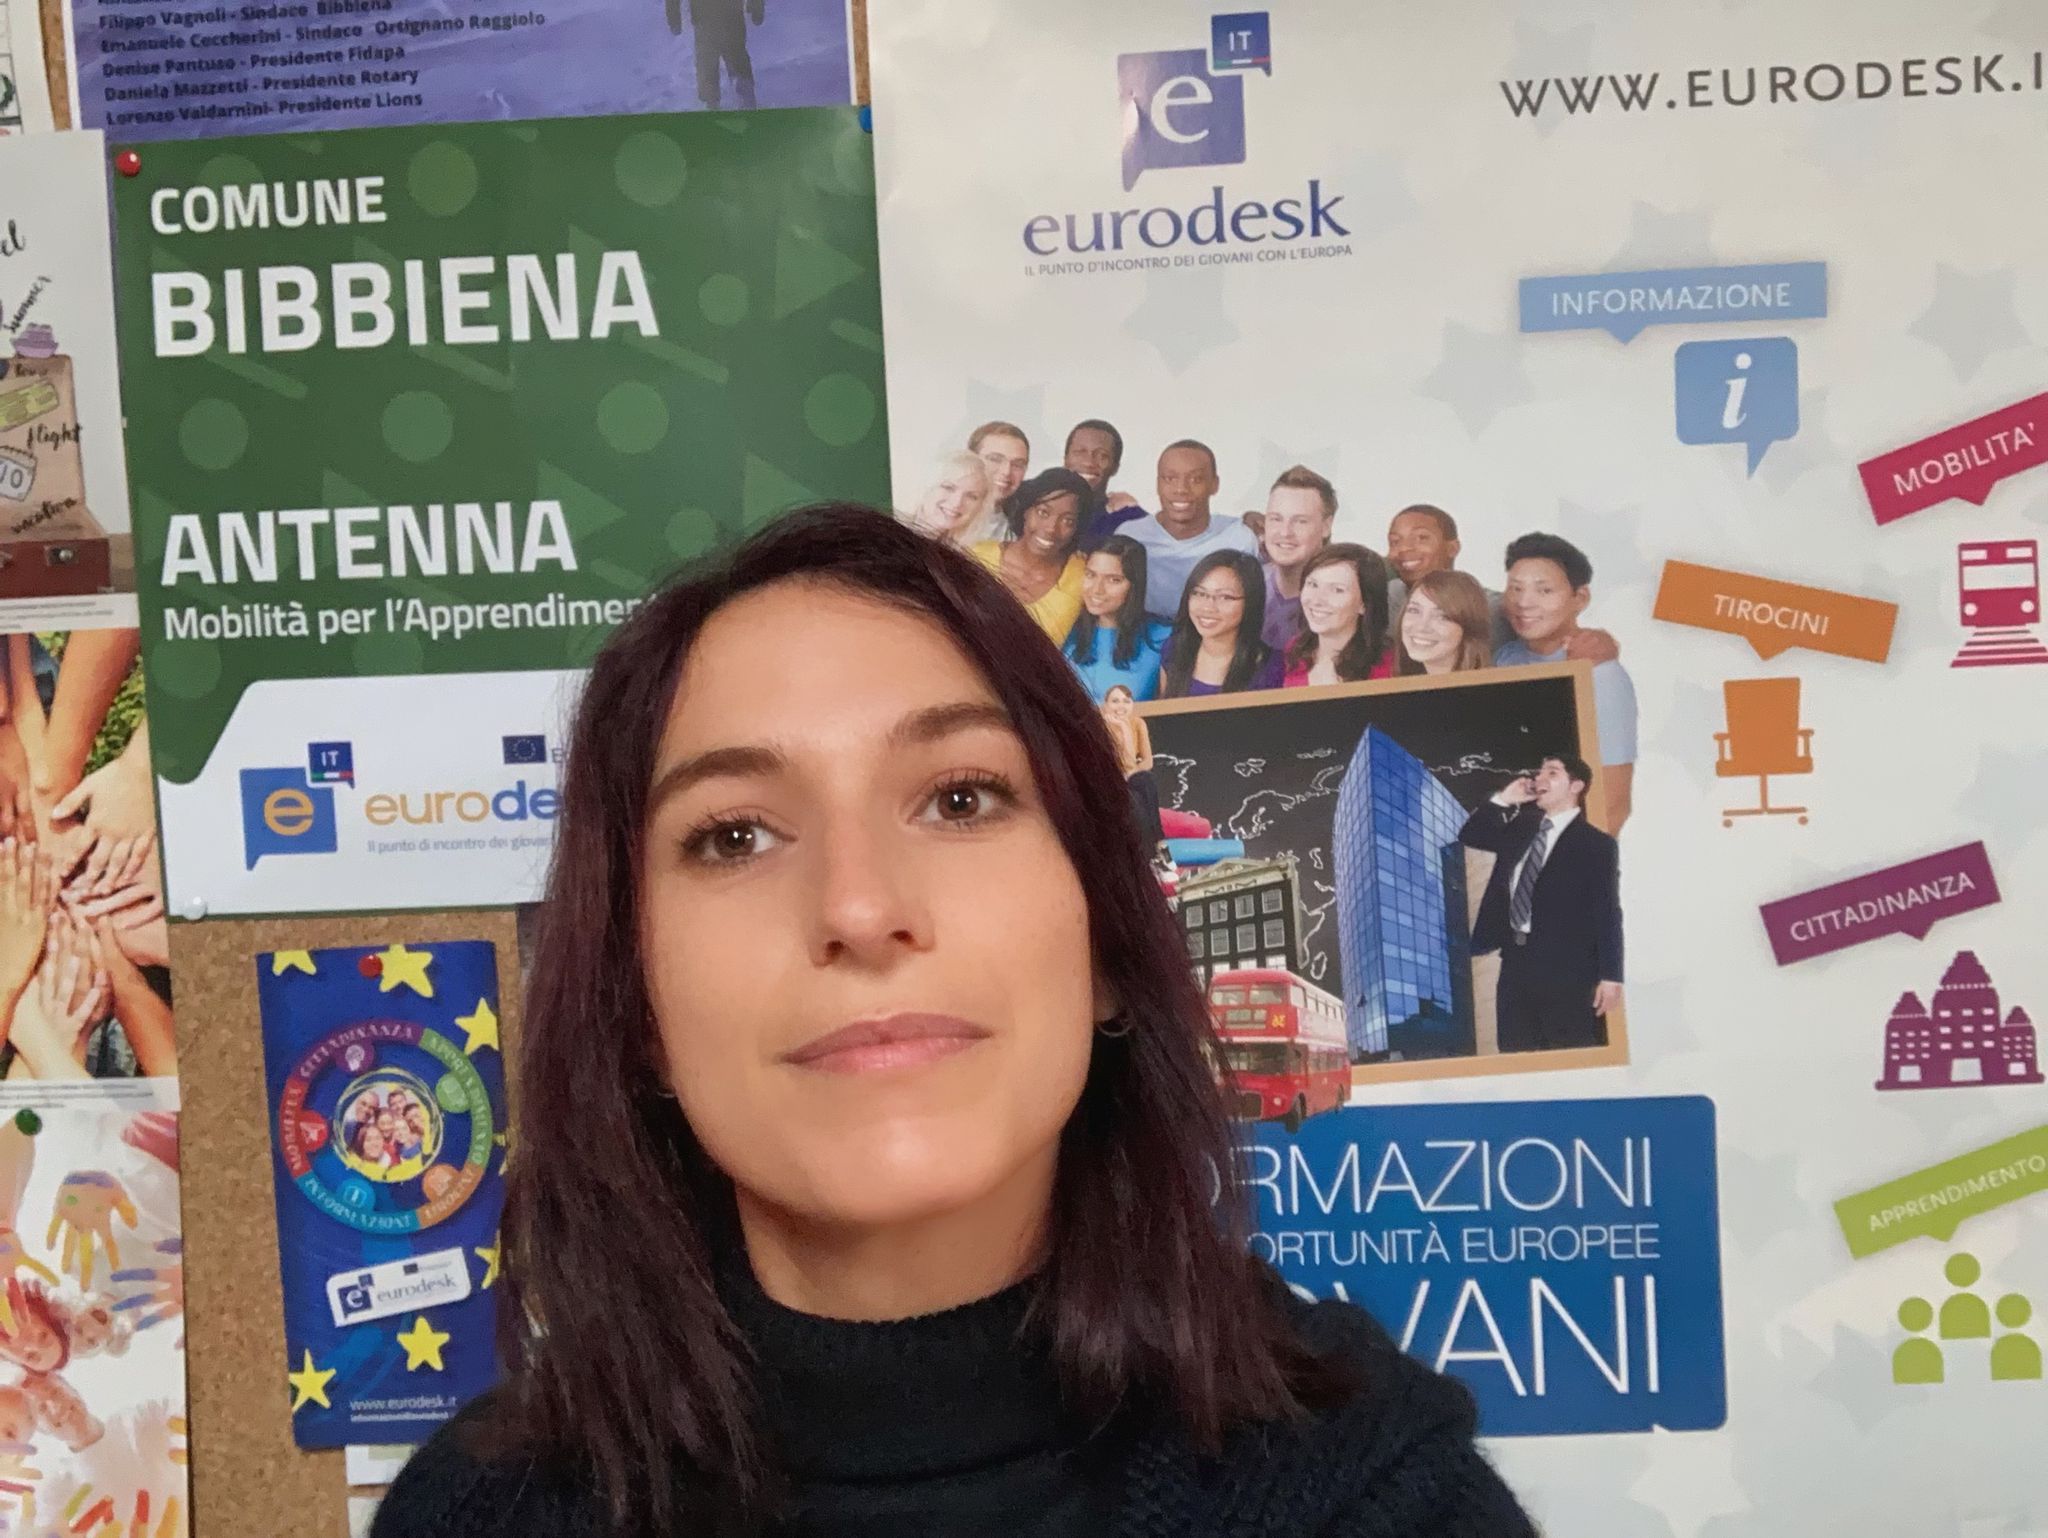 Eurodesk: Bibbiena rinnova l’adesione alla rete per dare nuove opportunità ai giovani del territorio nella ripresa